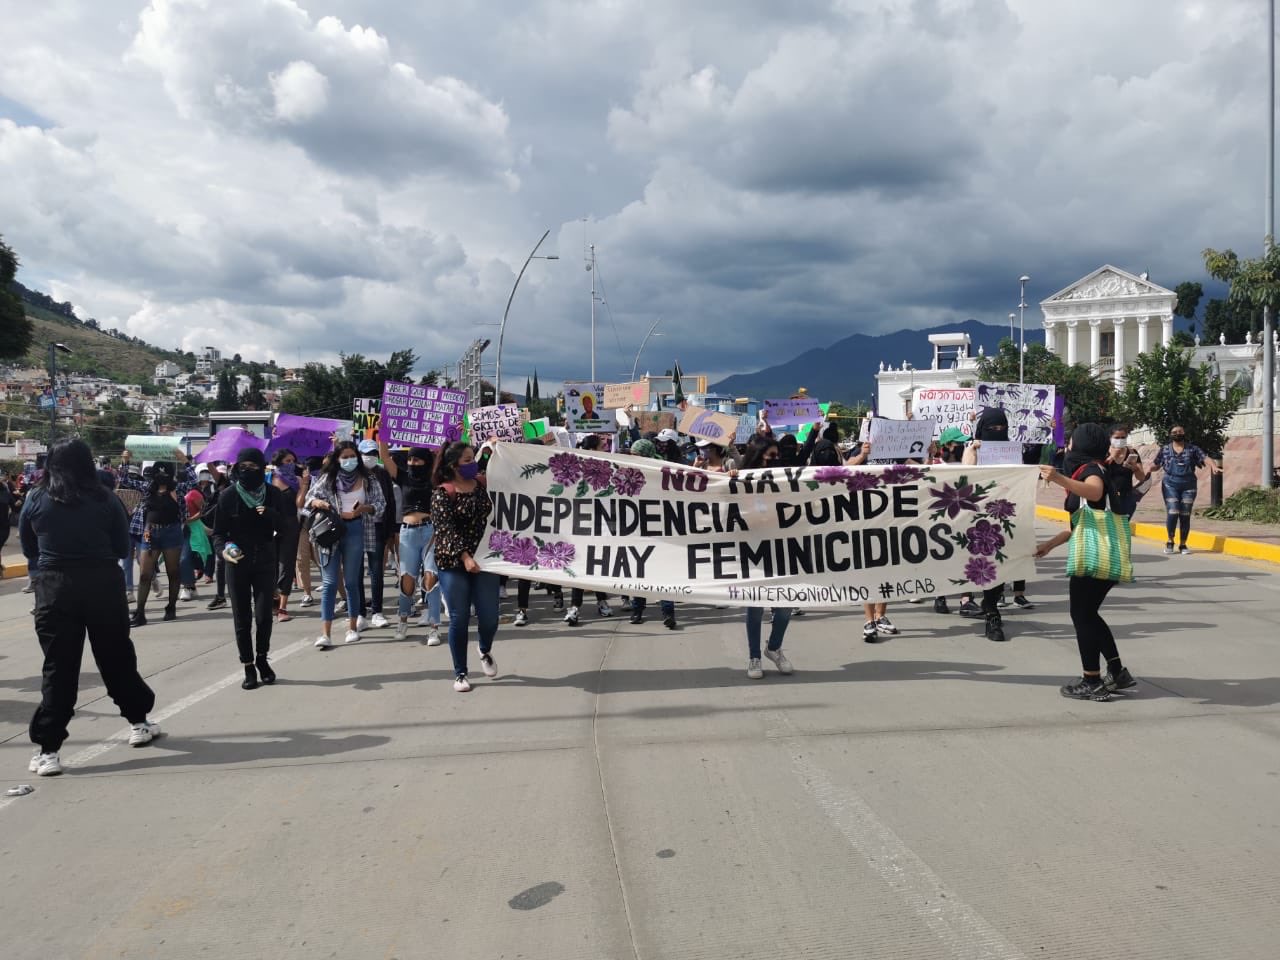 Meksika’daki feminist kolektiflerden patriyarkal şiddete karşı “Anti-Grito” eylemleri: Kadın cinayetleri varsa bağımsızlık yoktur